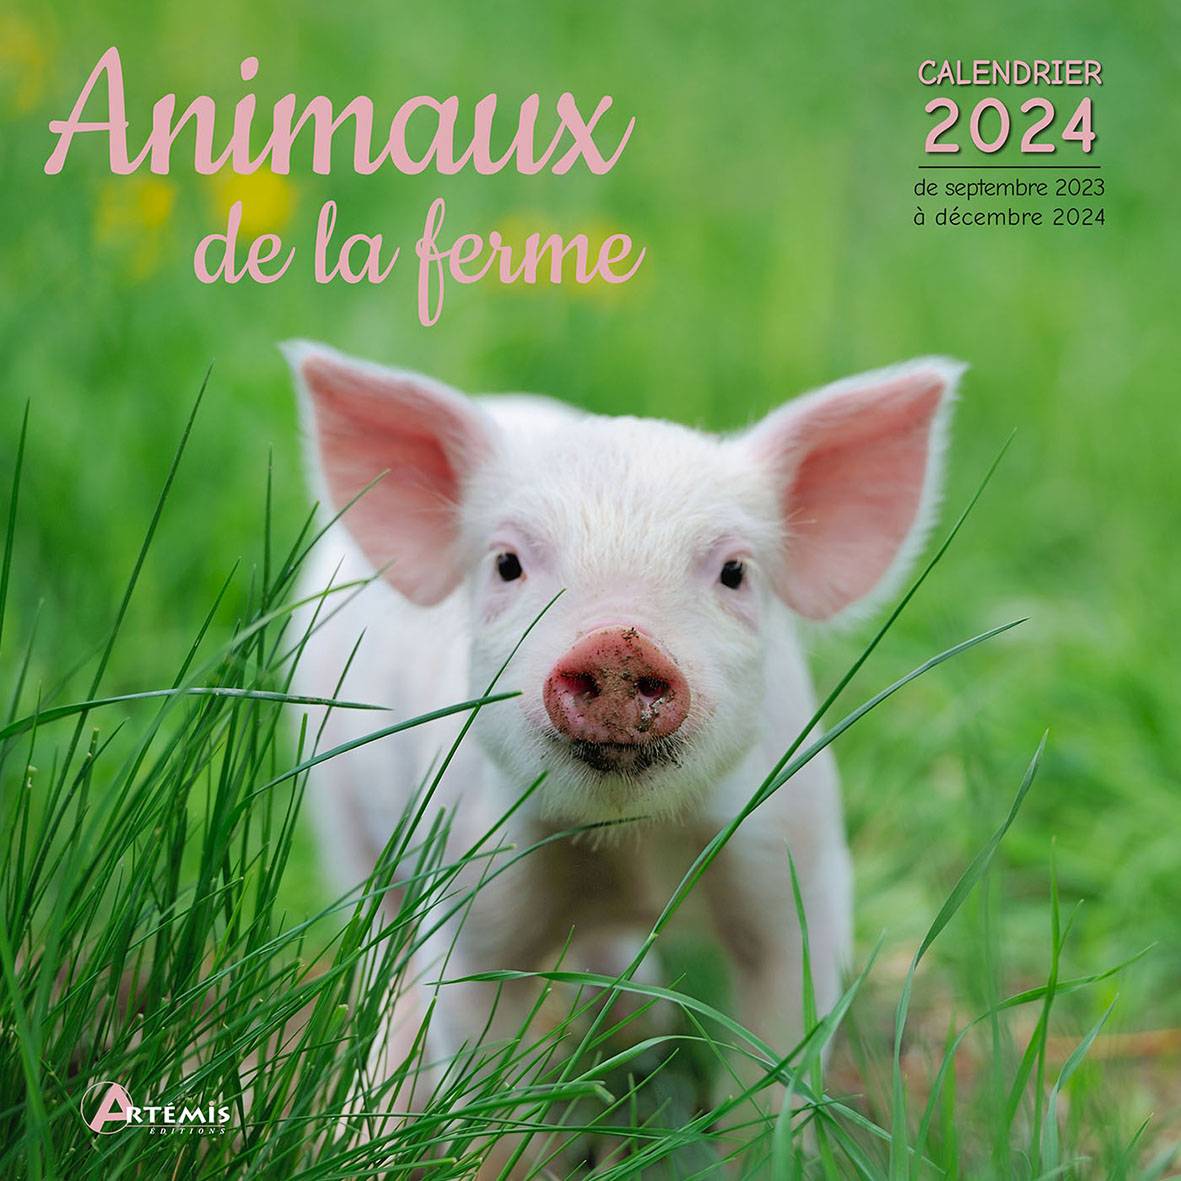 PERIODIQUE CALENDRIER ANIMAUX DE LA FERME 2024